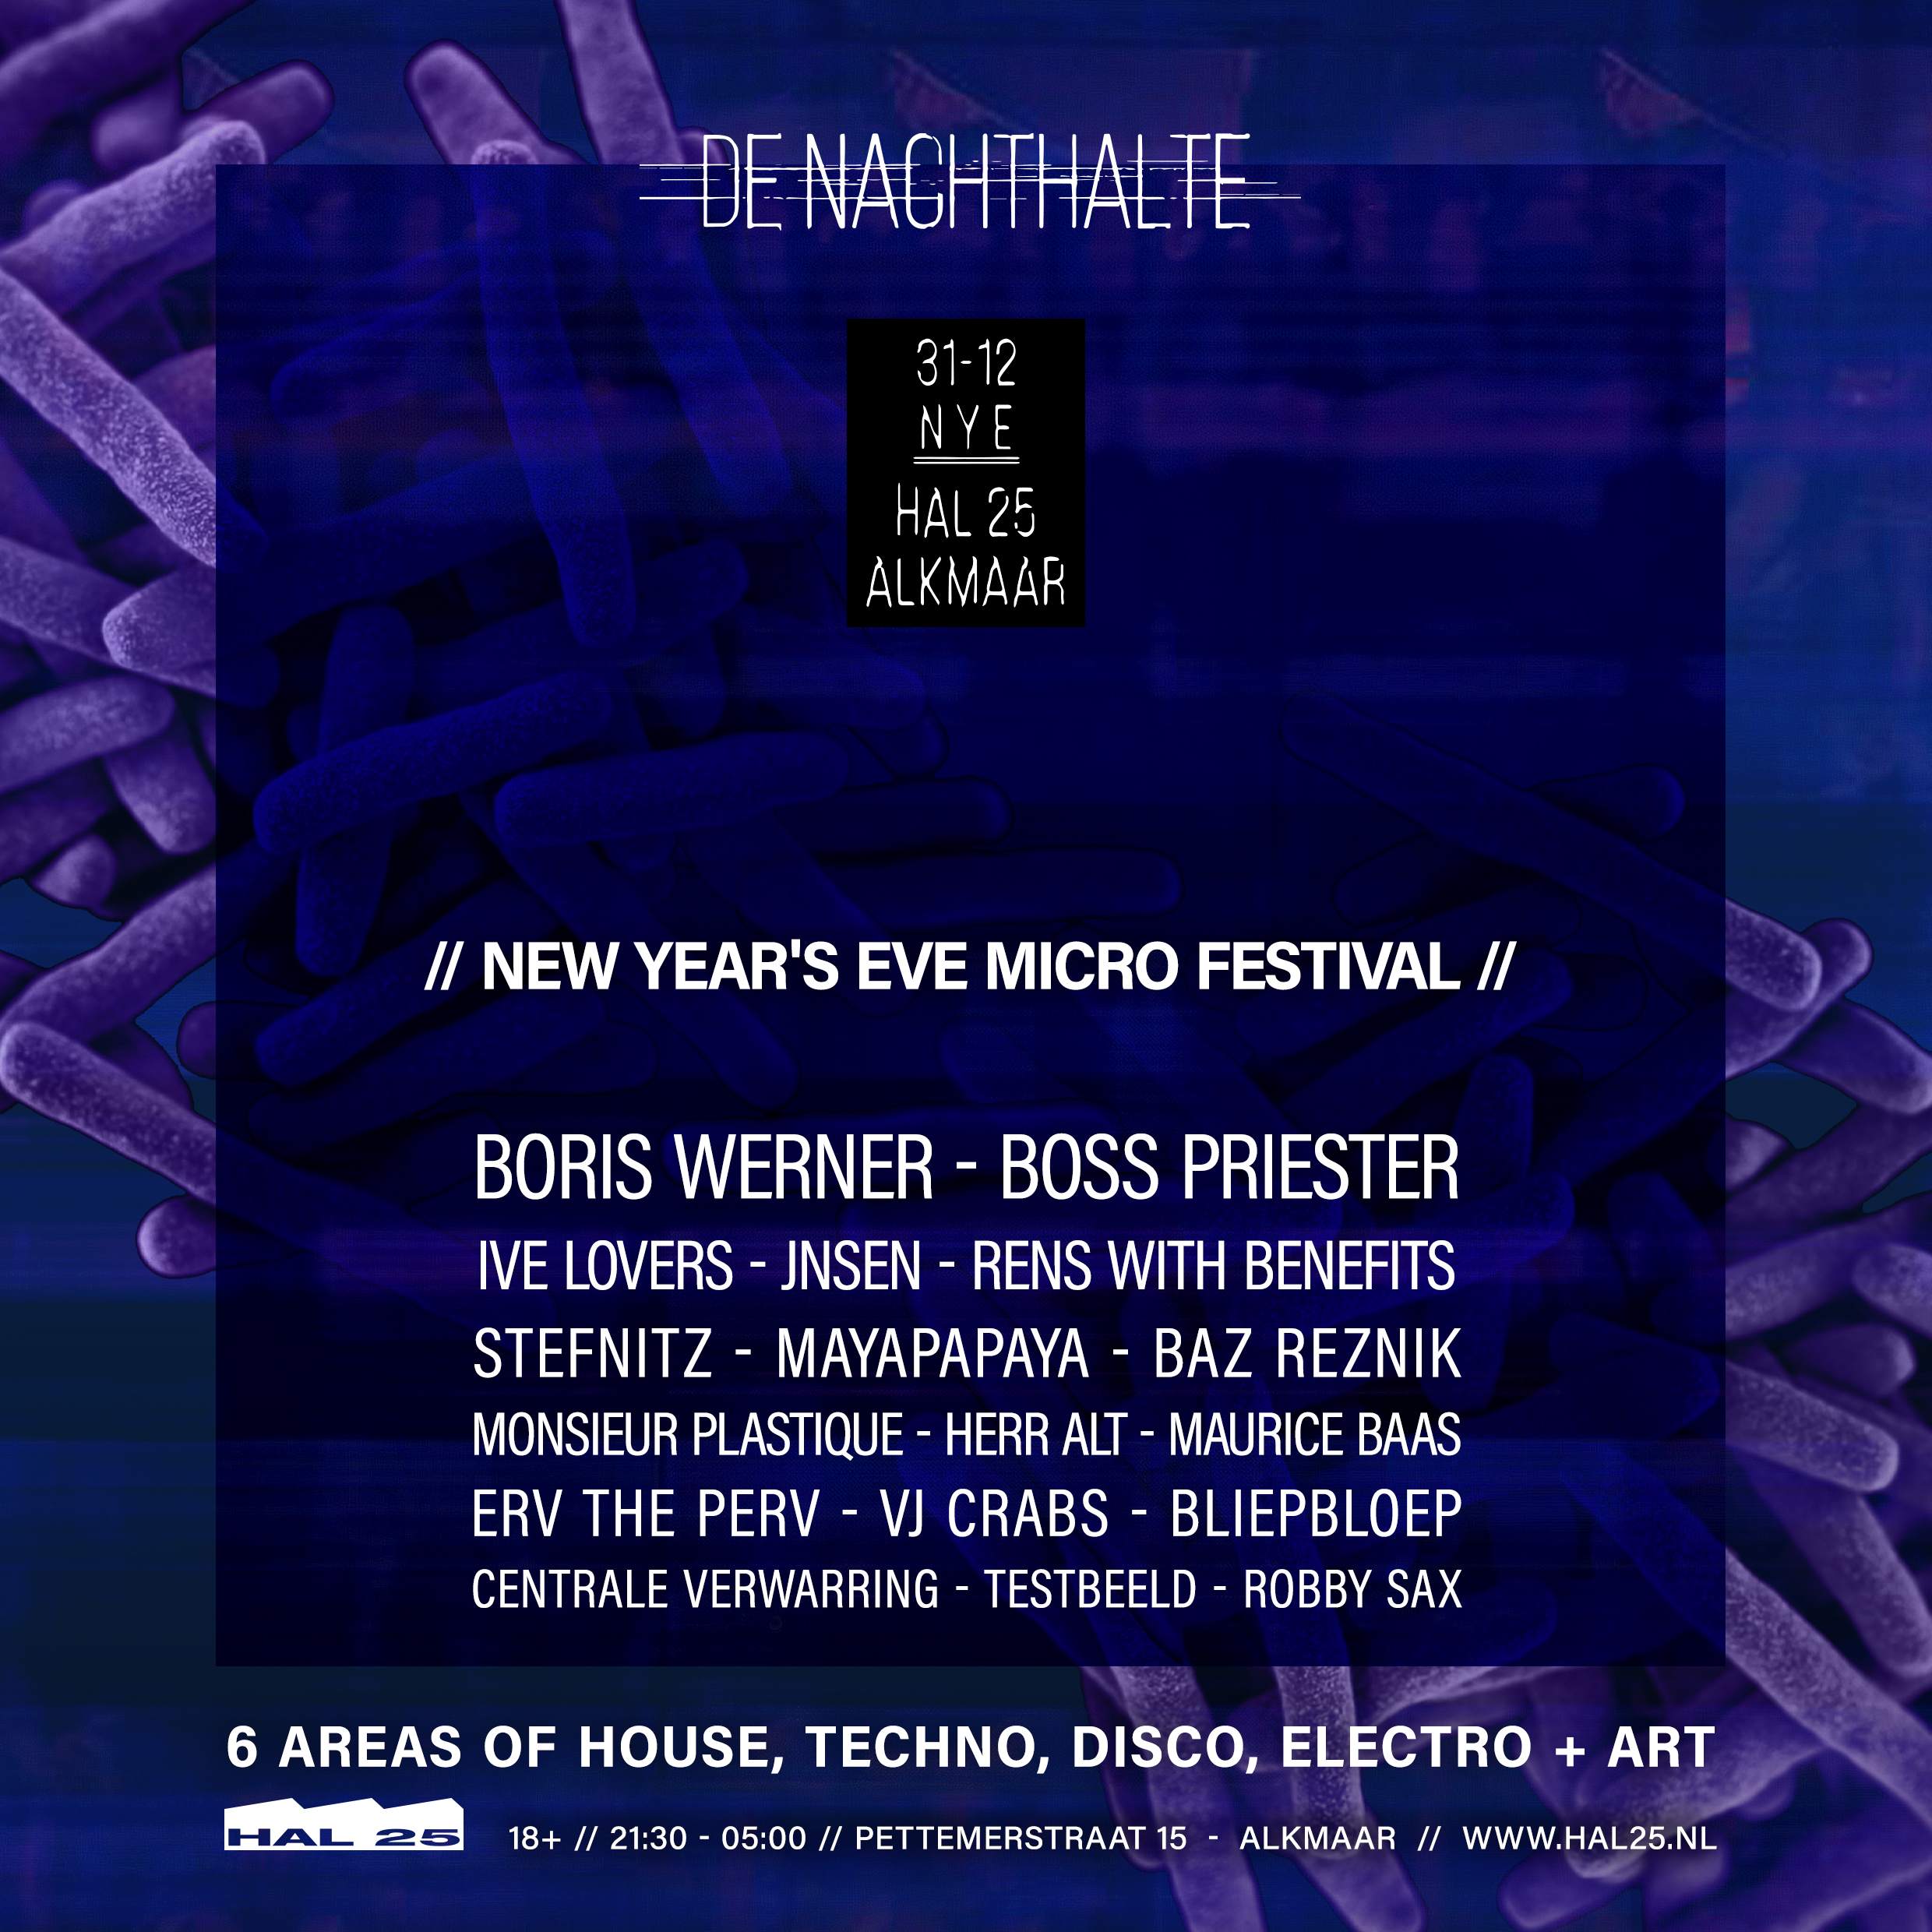 De Nachthalte - Microfestival - NYE - フライヤー表